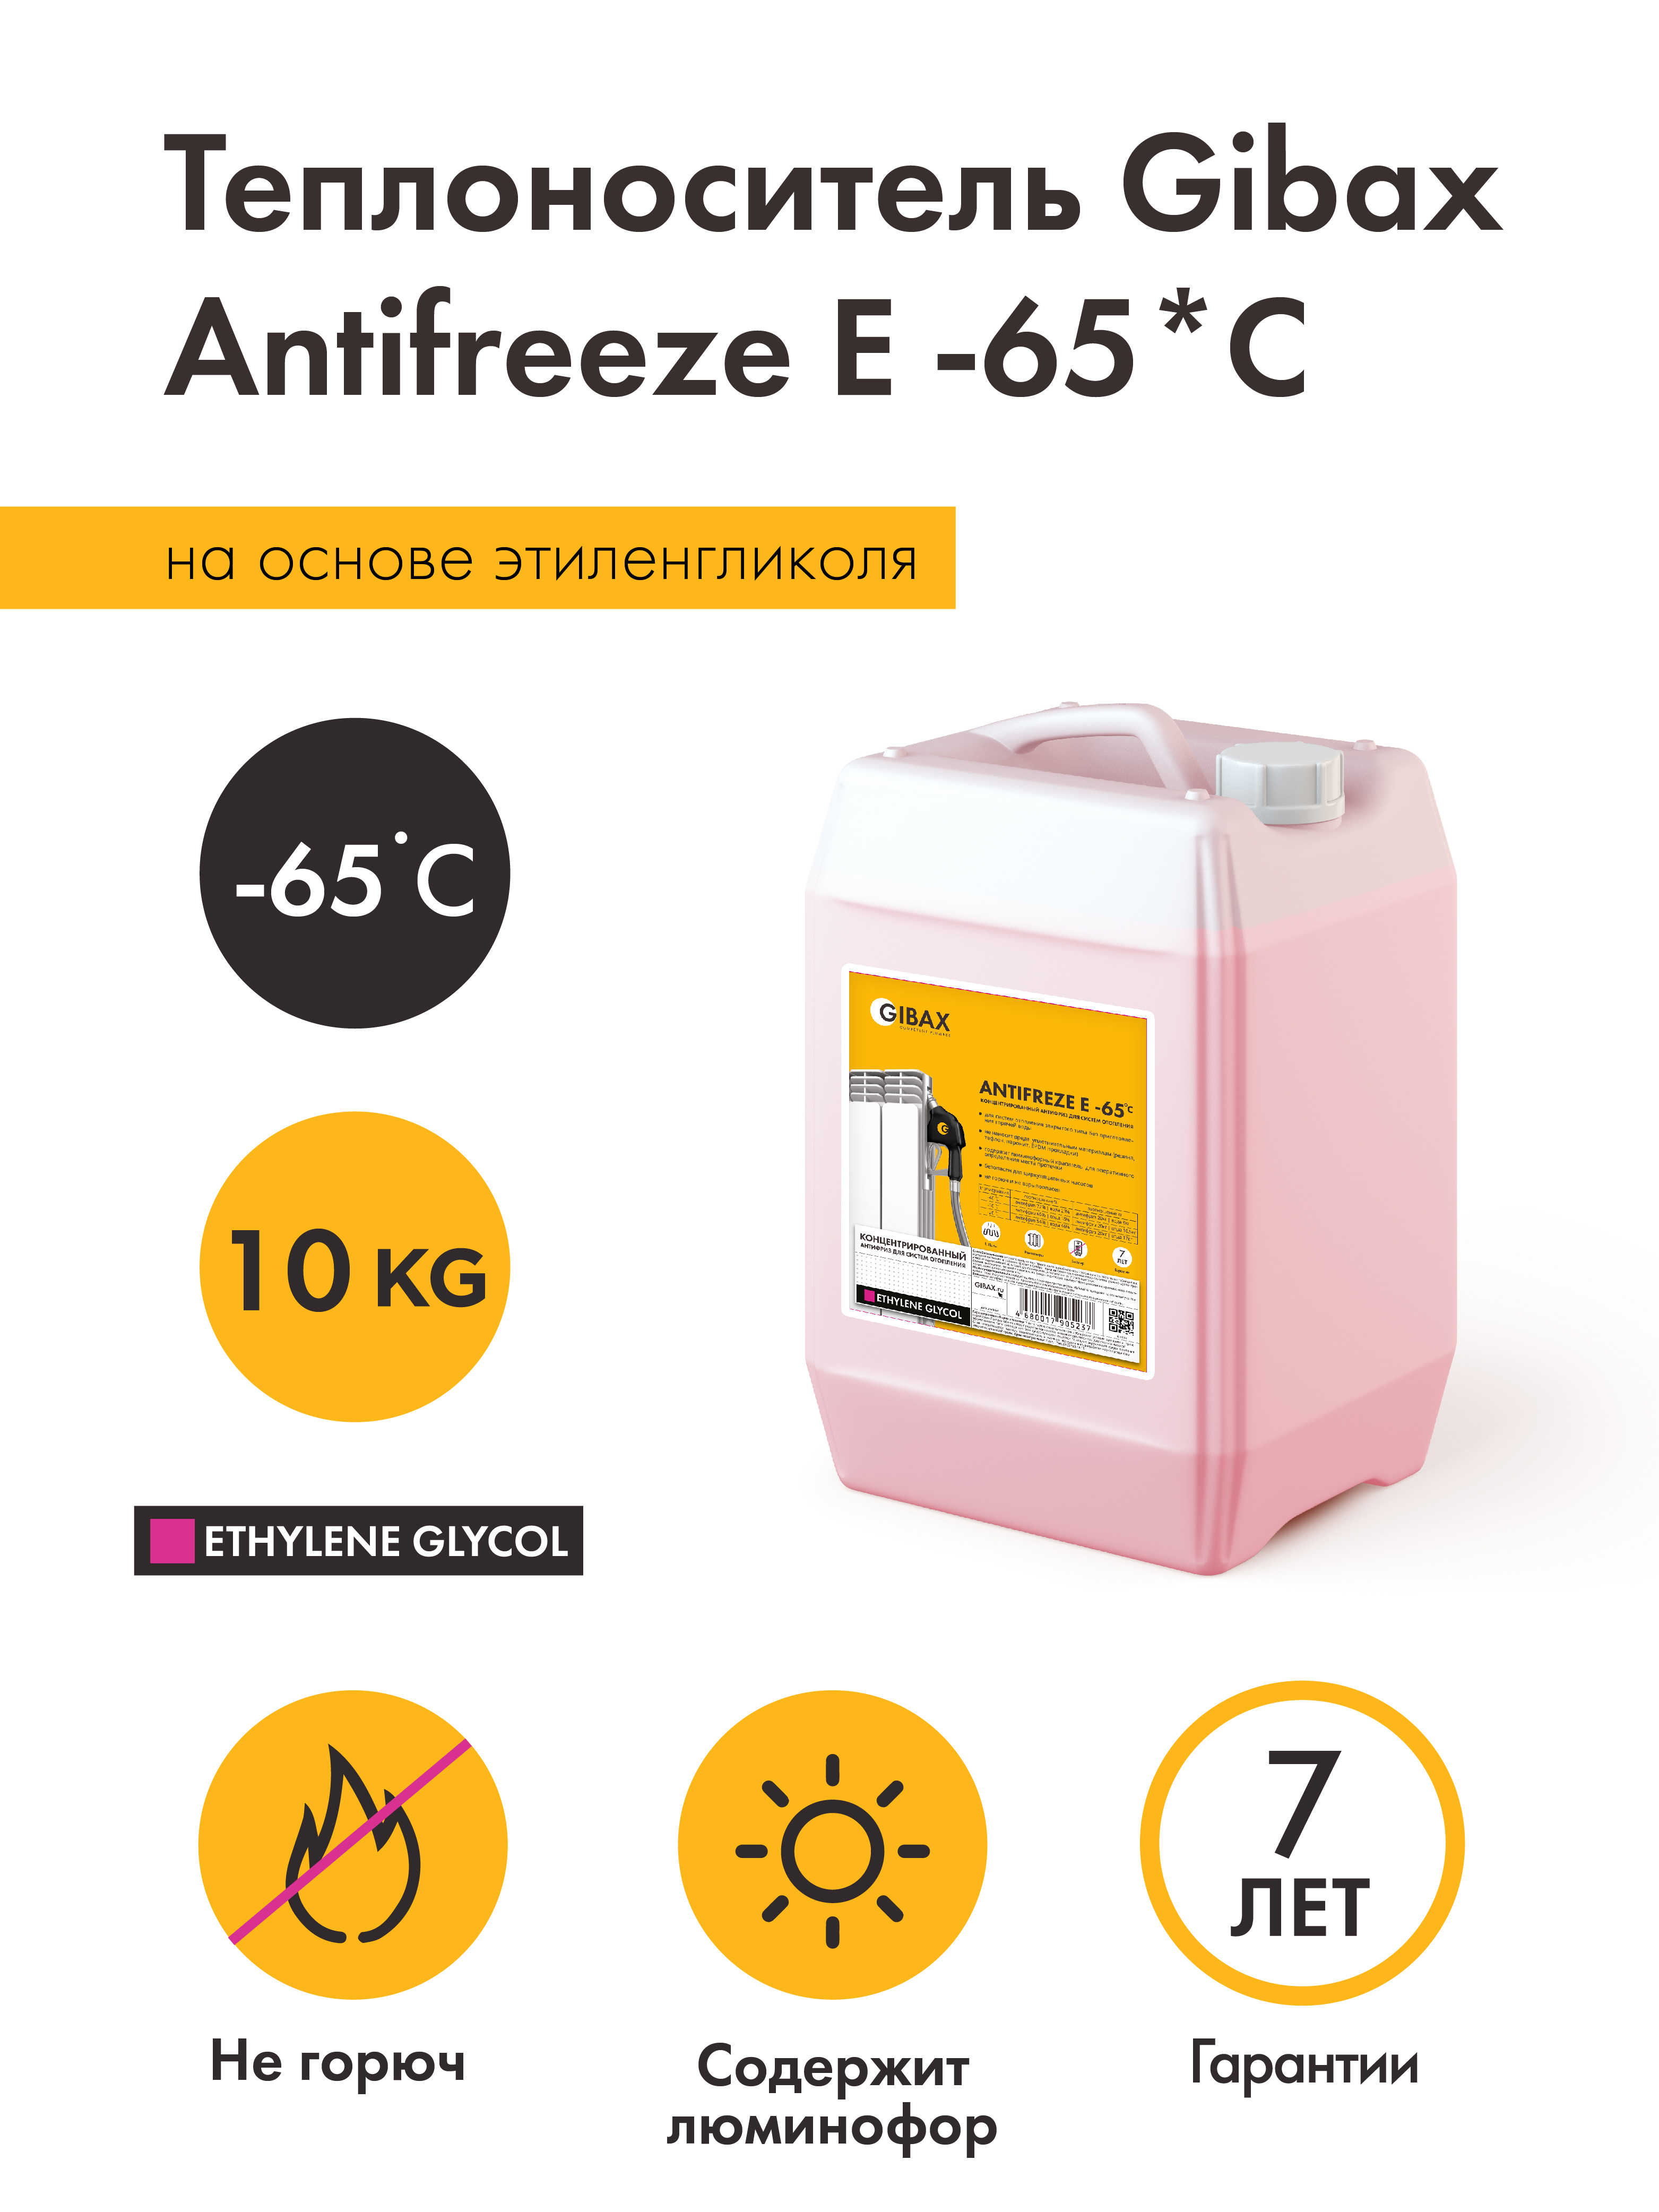 Теплоноситель Antifreeze -65*С 10кг, на основе этиленгликоля